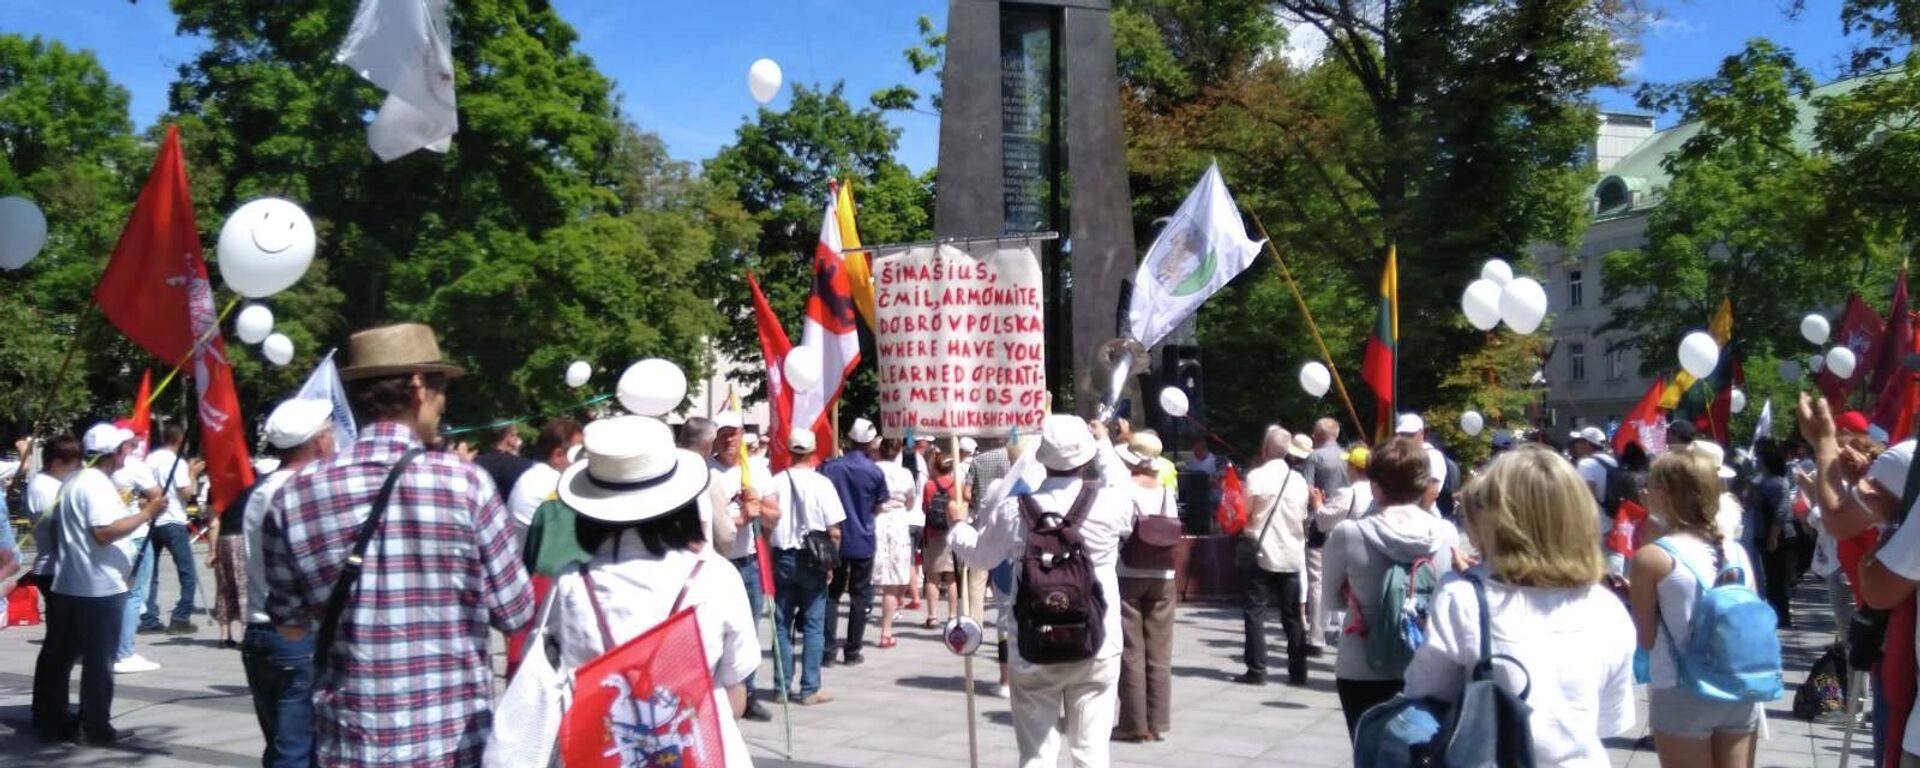 Митинг в защиту семьи на площади имени Винцаса Кудирки напротив здания правительства Литвы - Sputnik Lietuva, 1920, 16.06.2021